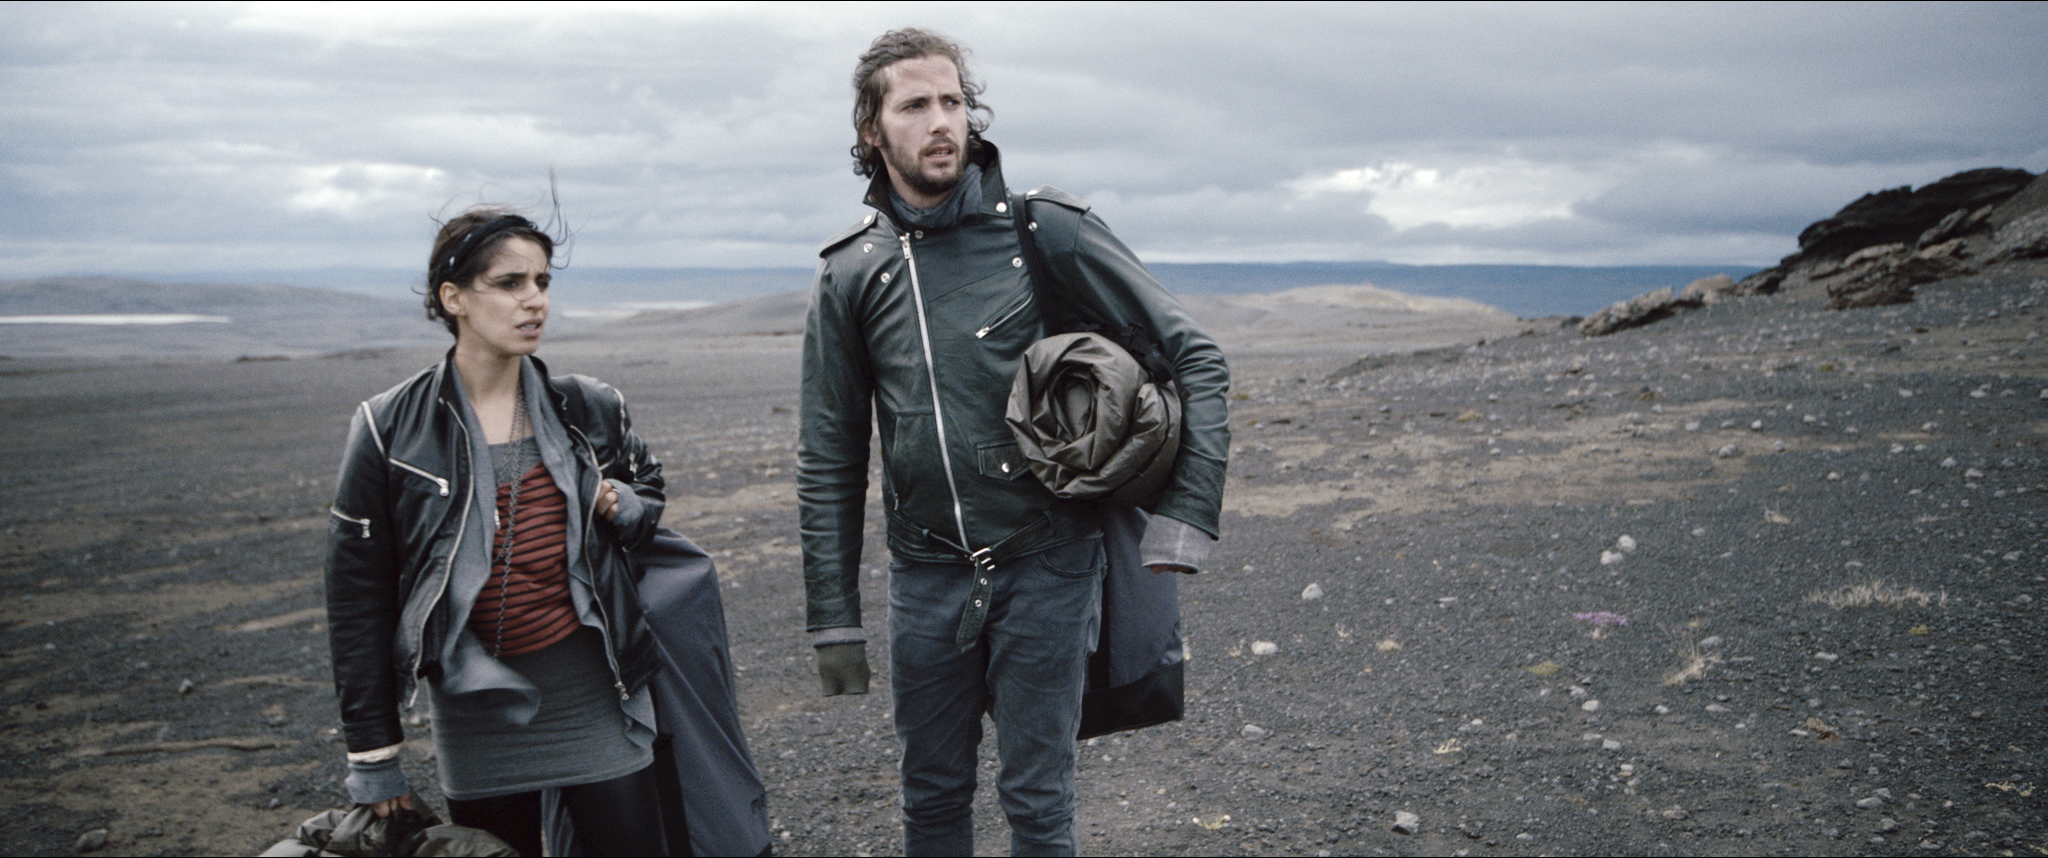 Ausgesetzt in der grauen Wüste des Nordens: Zusammen mit seiner Filmpartnerin Maryam Zaree im Film «Welcome to Iceland».